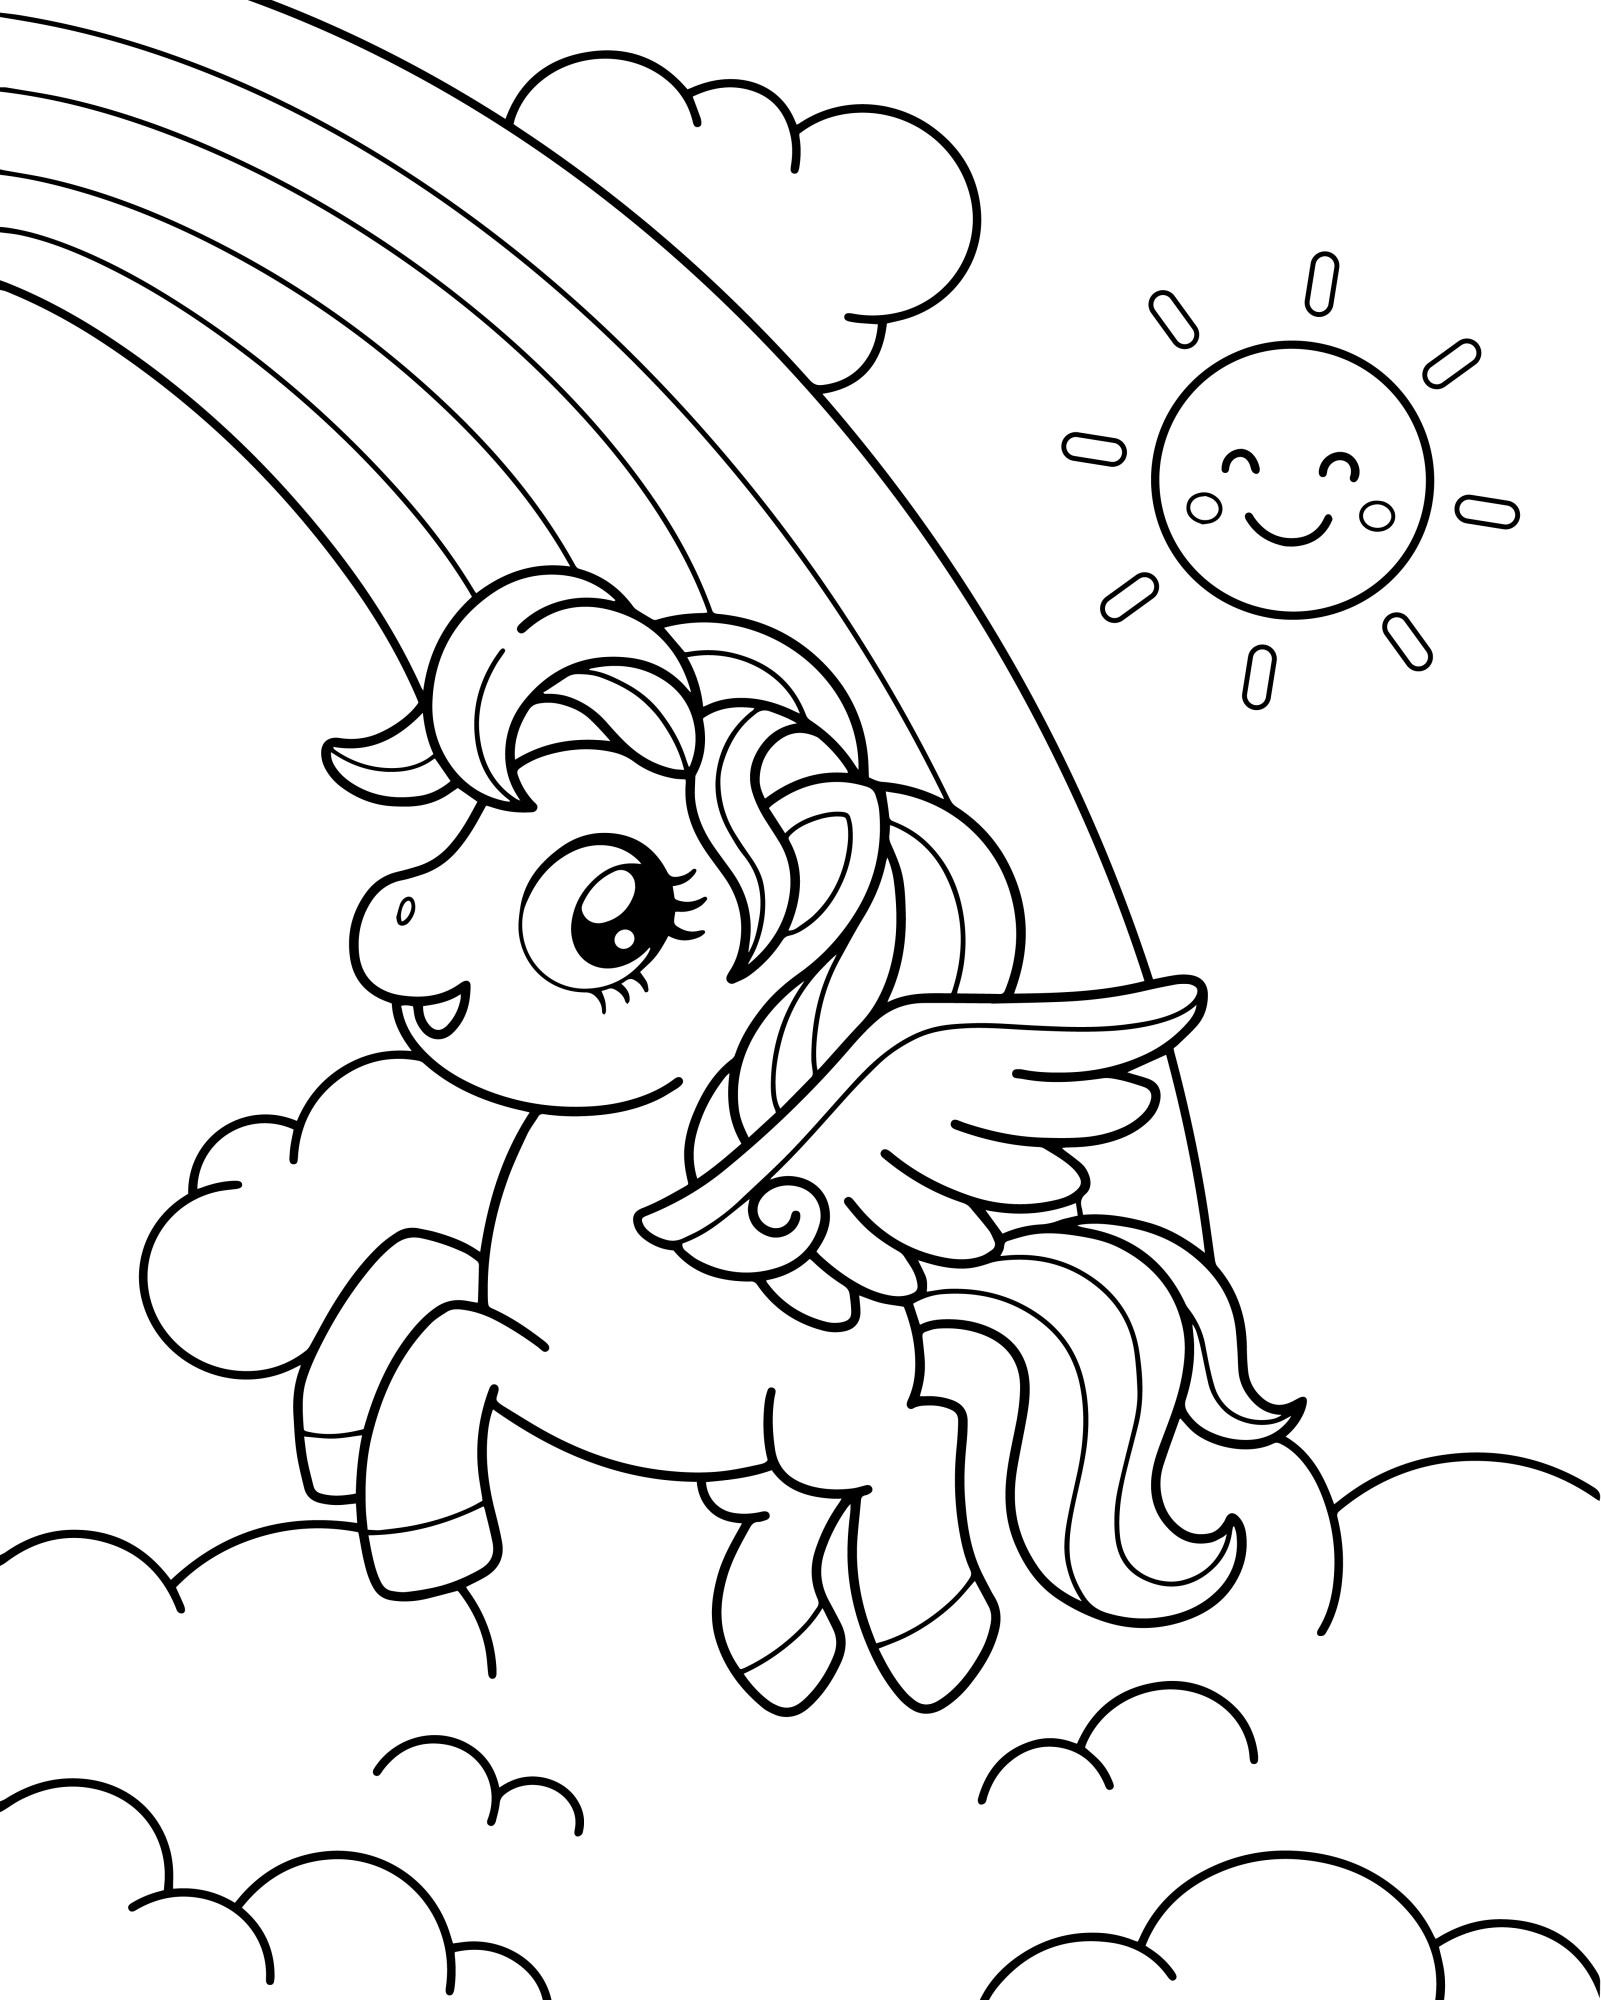 Раскраска для детей: единорог летит рядом с радугой